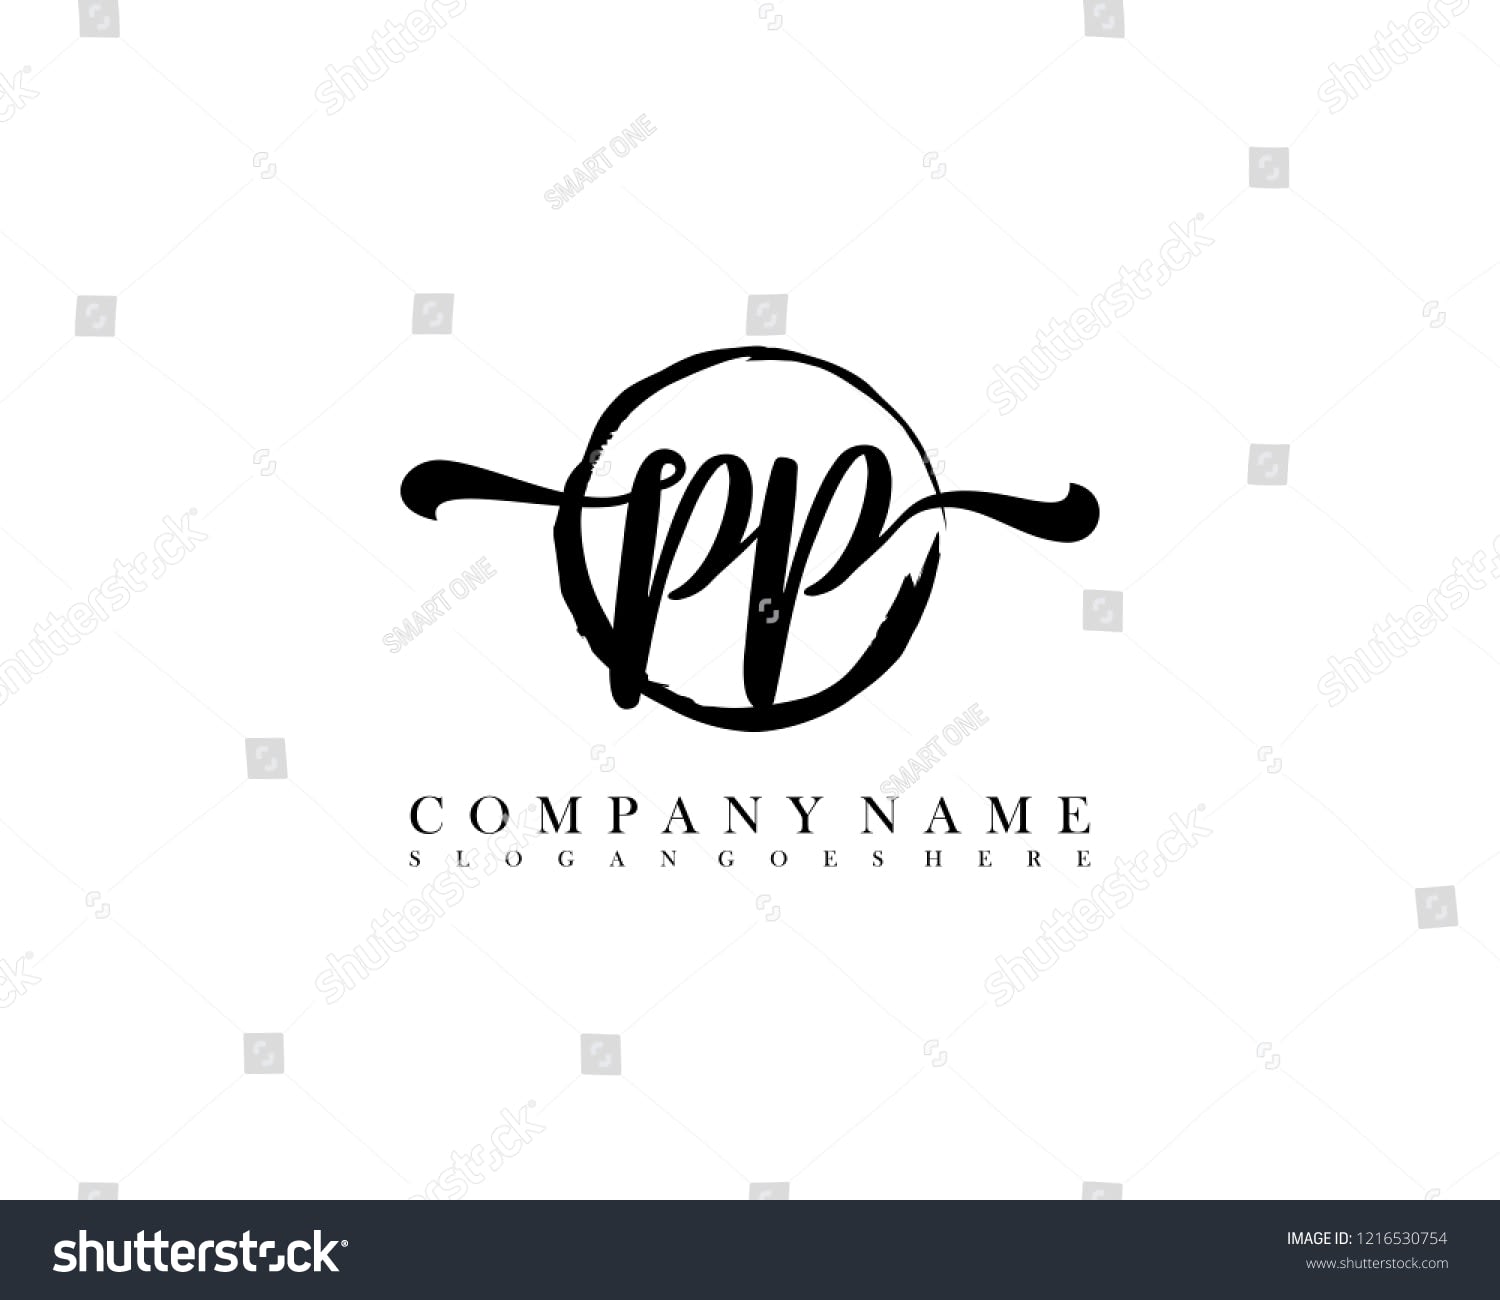 P. P. Enterprises